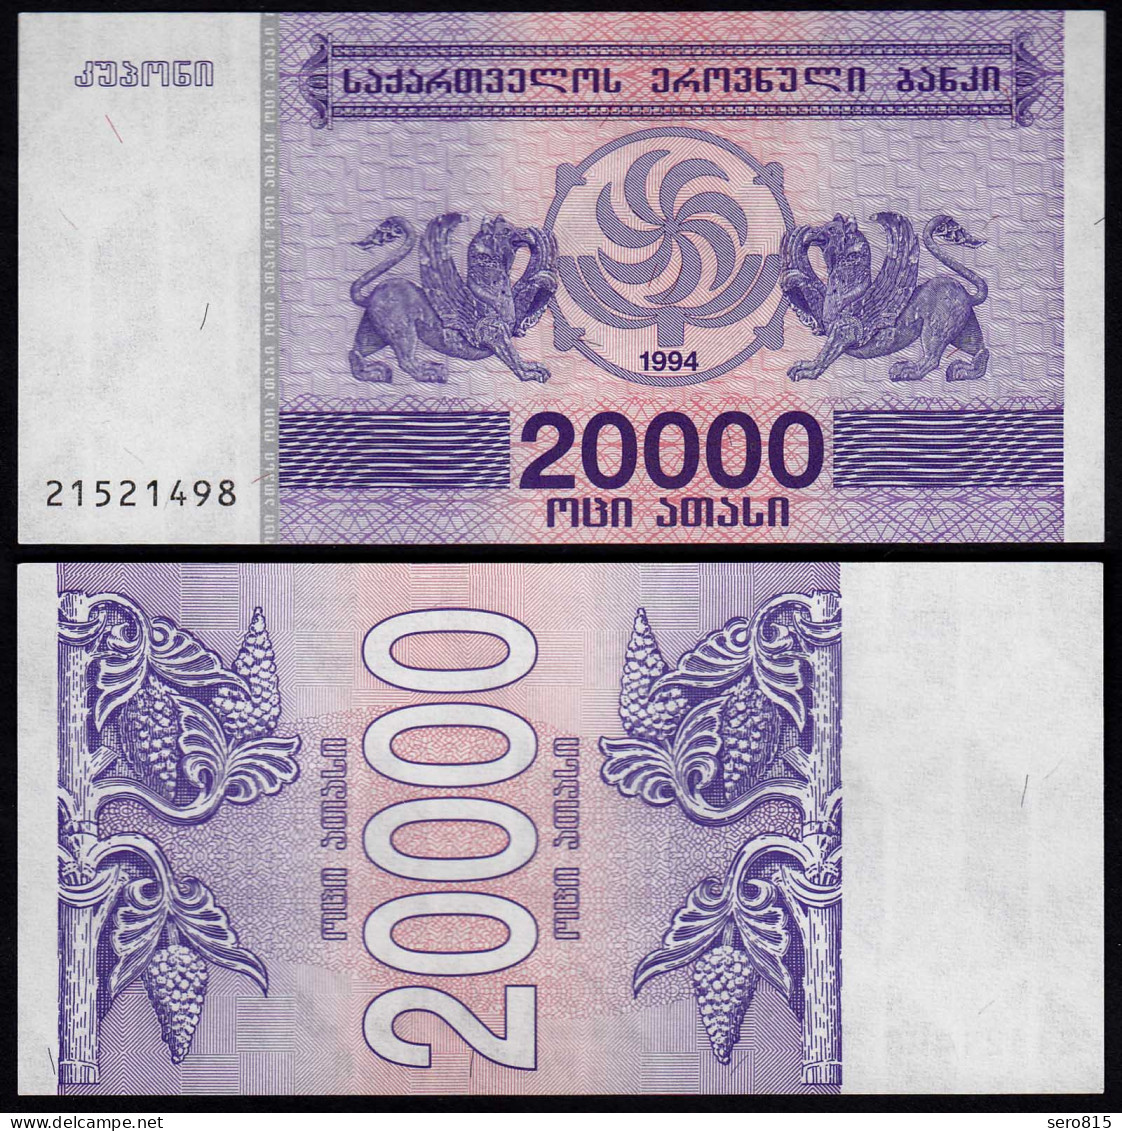  Georgien - Georgia 20000 20.000 Lari 1994 Pick 46b UNC (1)    (23370 - Autres - Asie